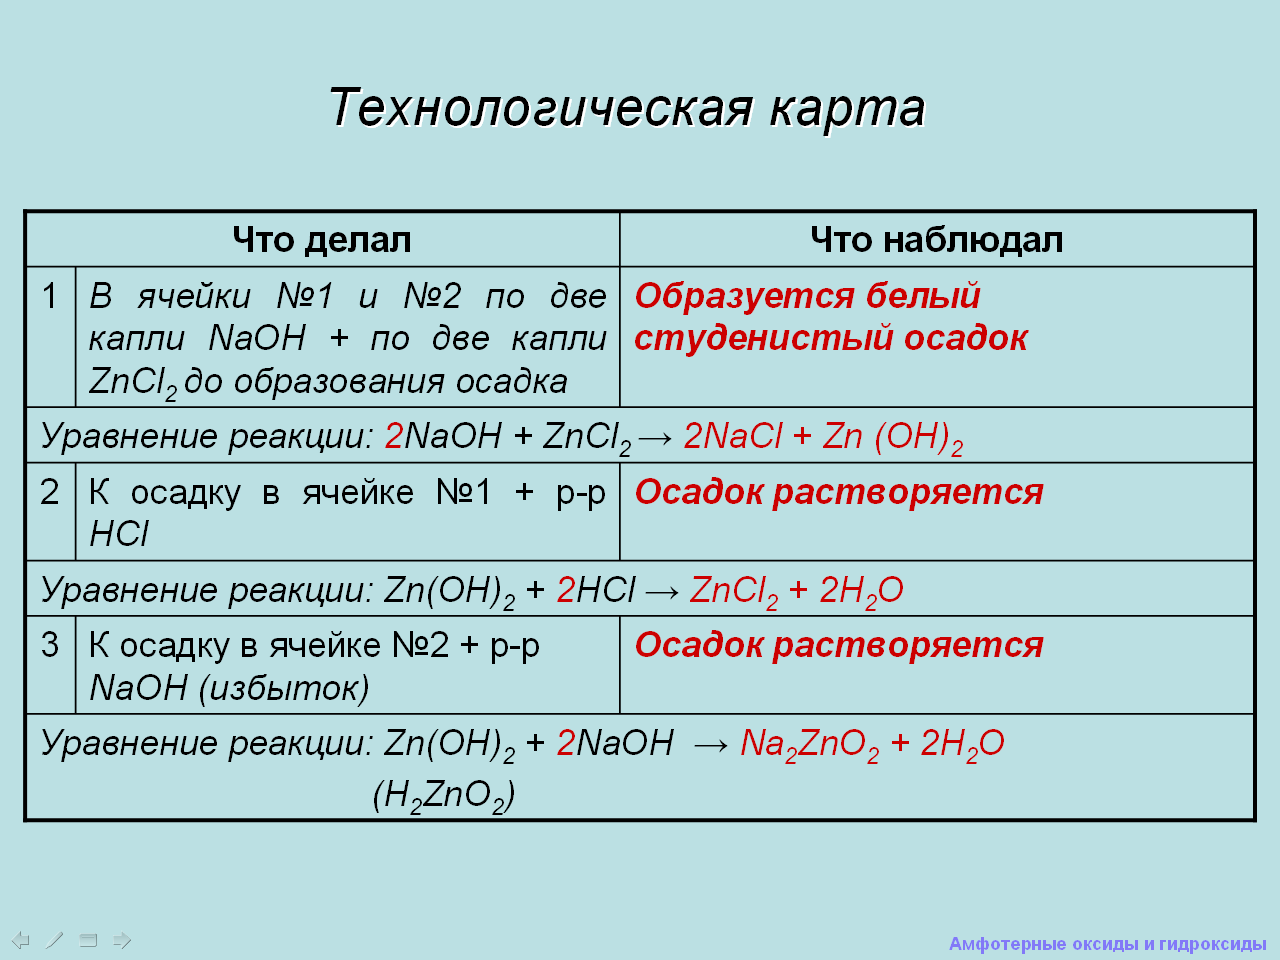 Химия амфотерные оксиды и гидроксиды. Химические свойства амфотерных оксидов и гидроксидов. Амфотерный оксид и амфотерный гидроксид. Конспект по амфотерные оксиды и гидроксиды. Получение амфотерных оксидов и гидроксидов.